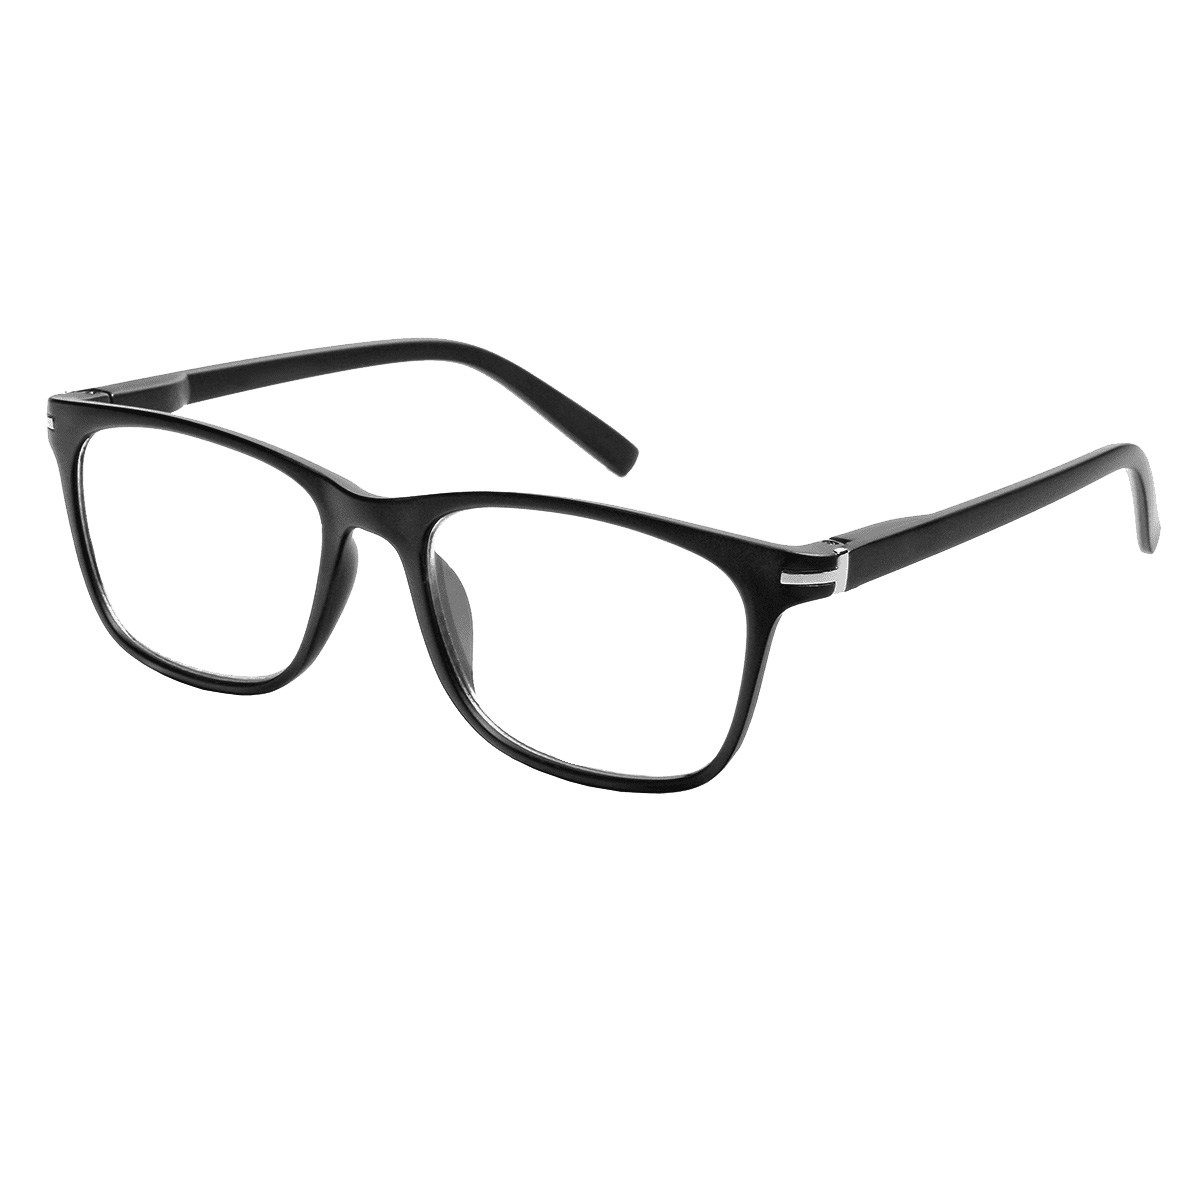 Solo - Rectangle Black Reading Glasses for Men & Women